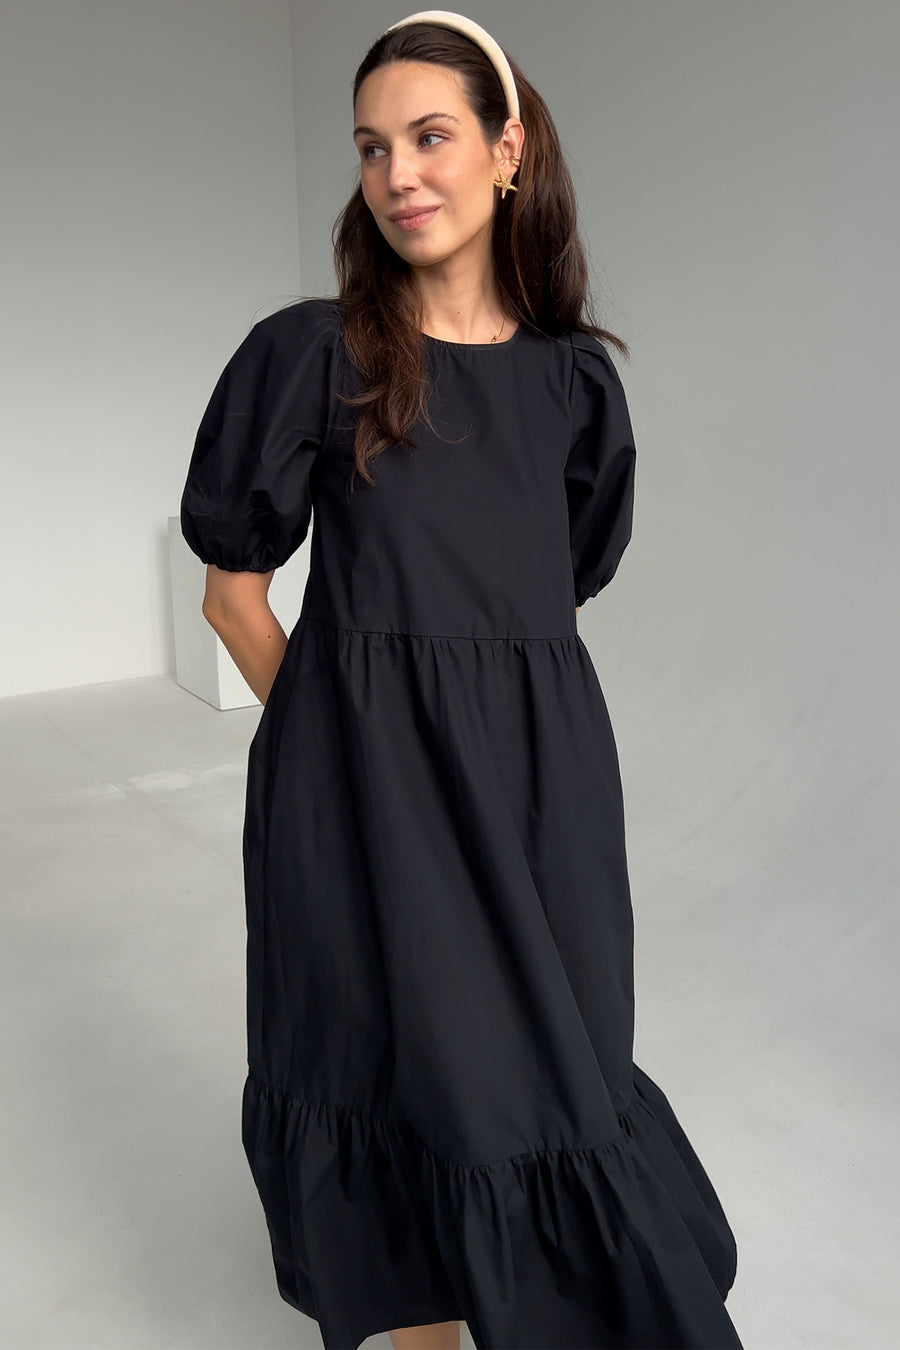 Sukienka z bawełny organicznej / 03 / 22 / onyx black ?Modelka ma 178 cm wzrostu i prezentuje rozmiar M/L?